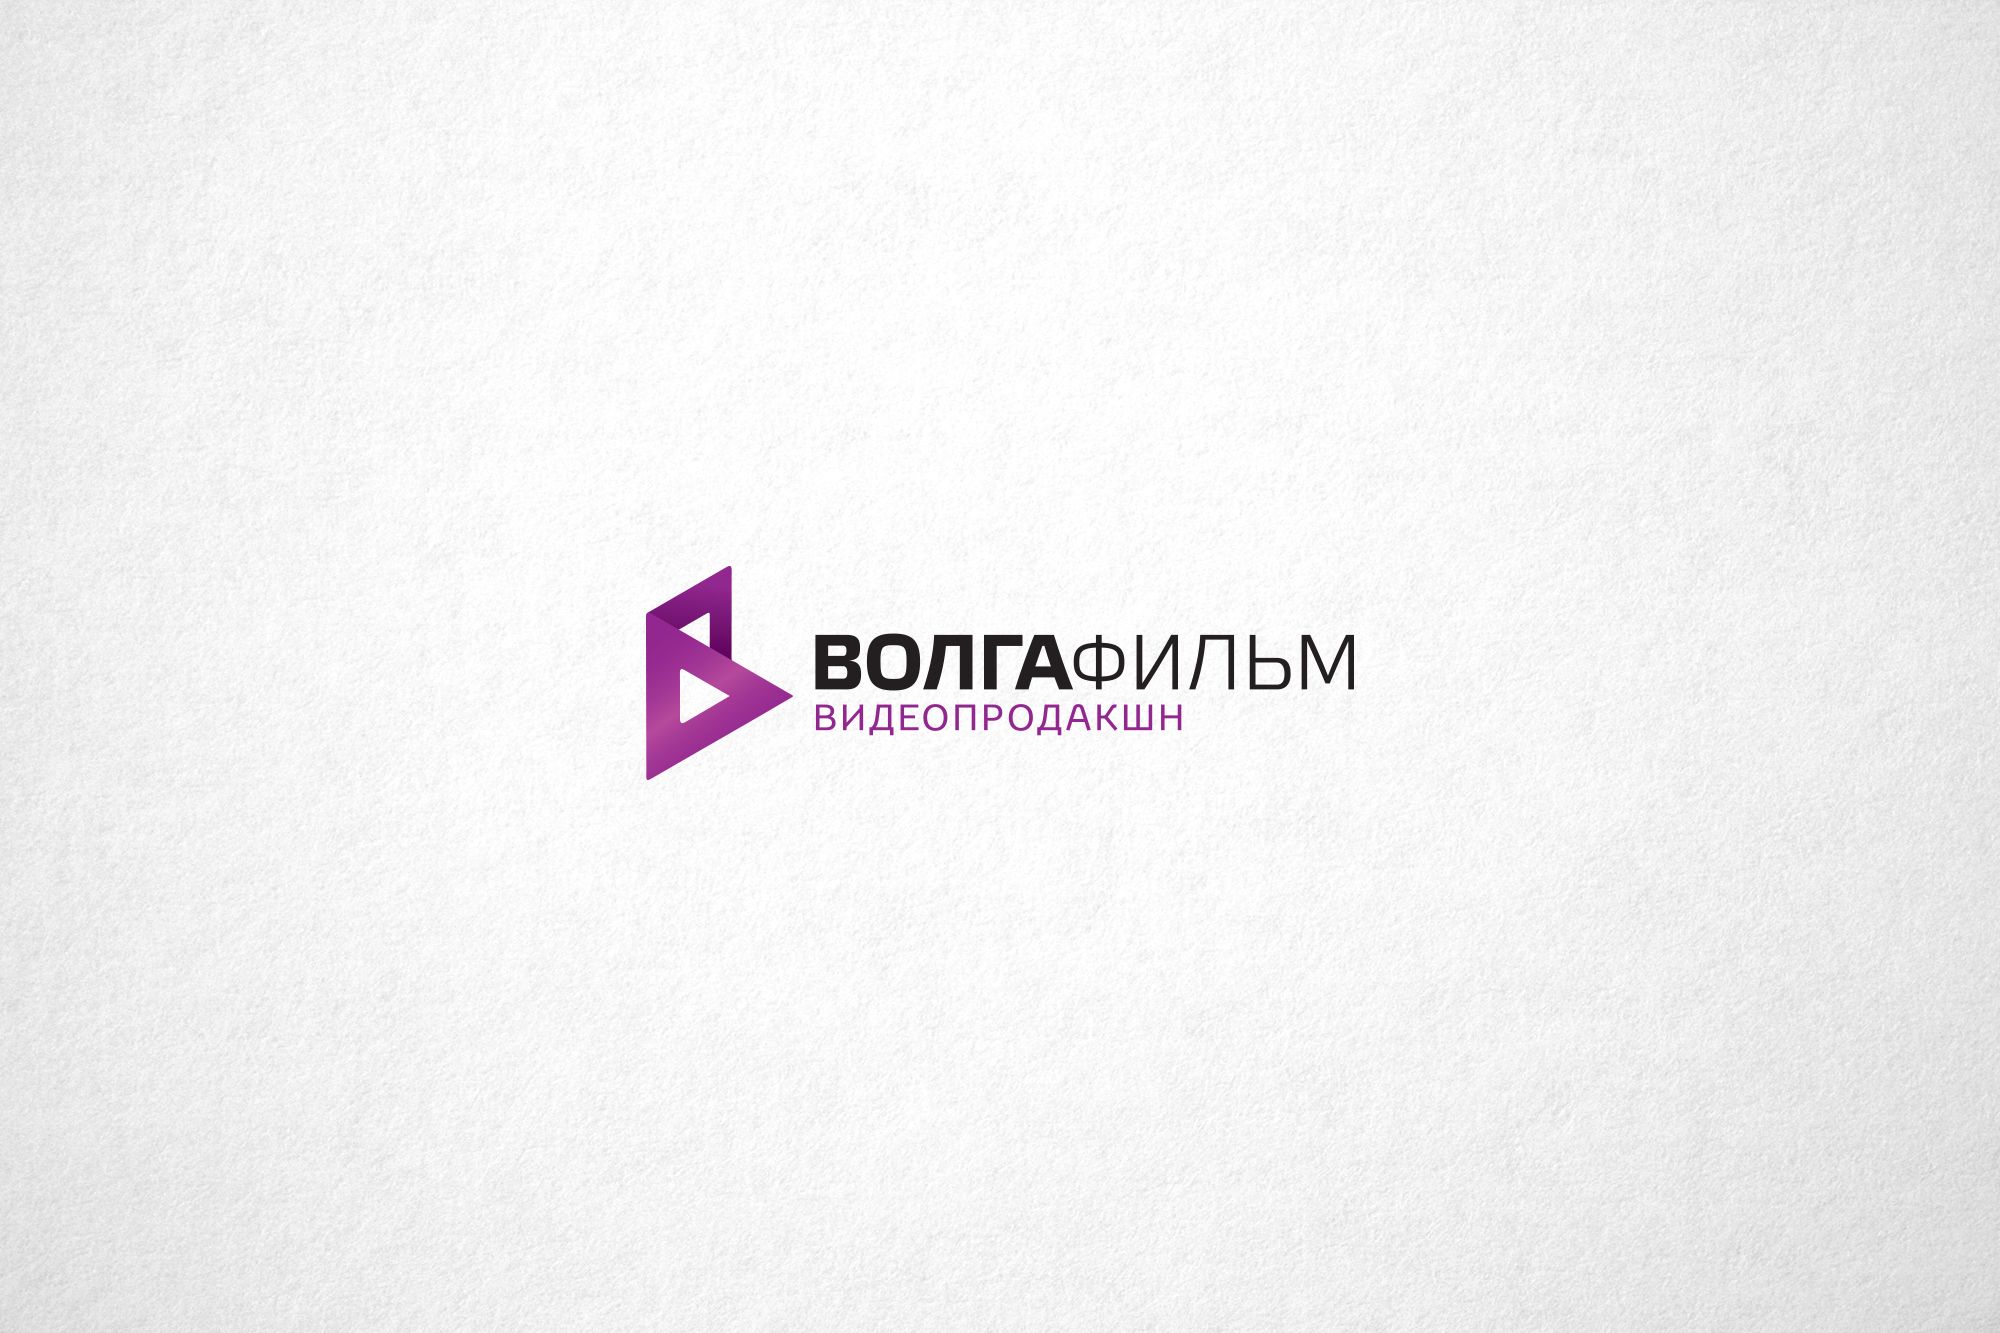 Лого и фирменный стиль для Волга-фильм видеопродакшн - дизайнер Da4erry